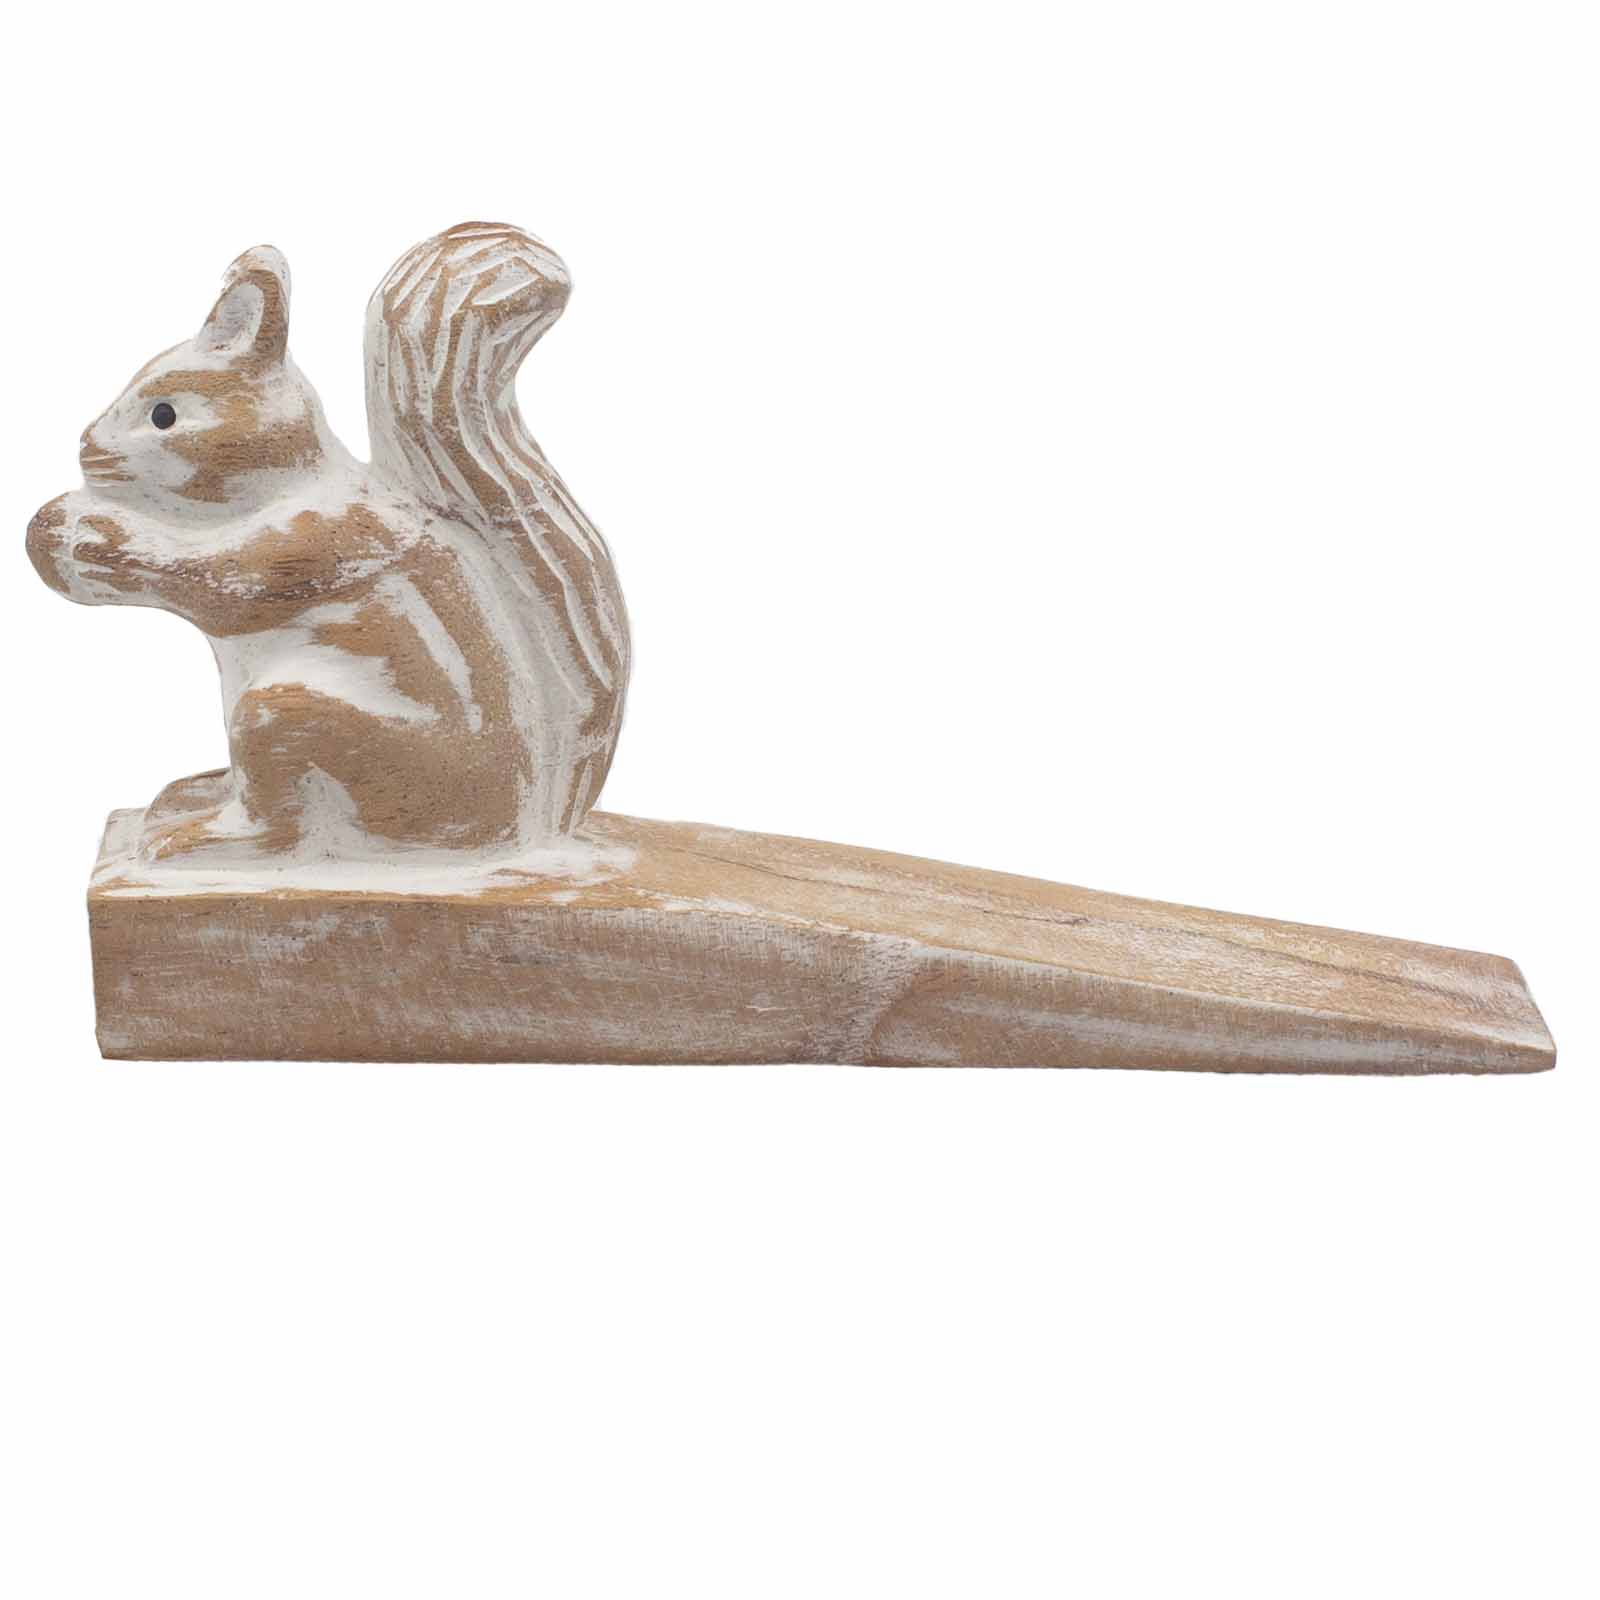 Handcarved Wooden Doorstop - Squirrel